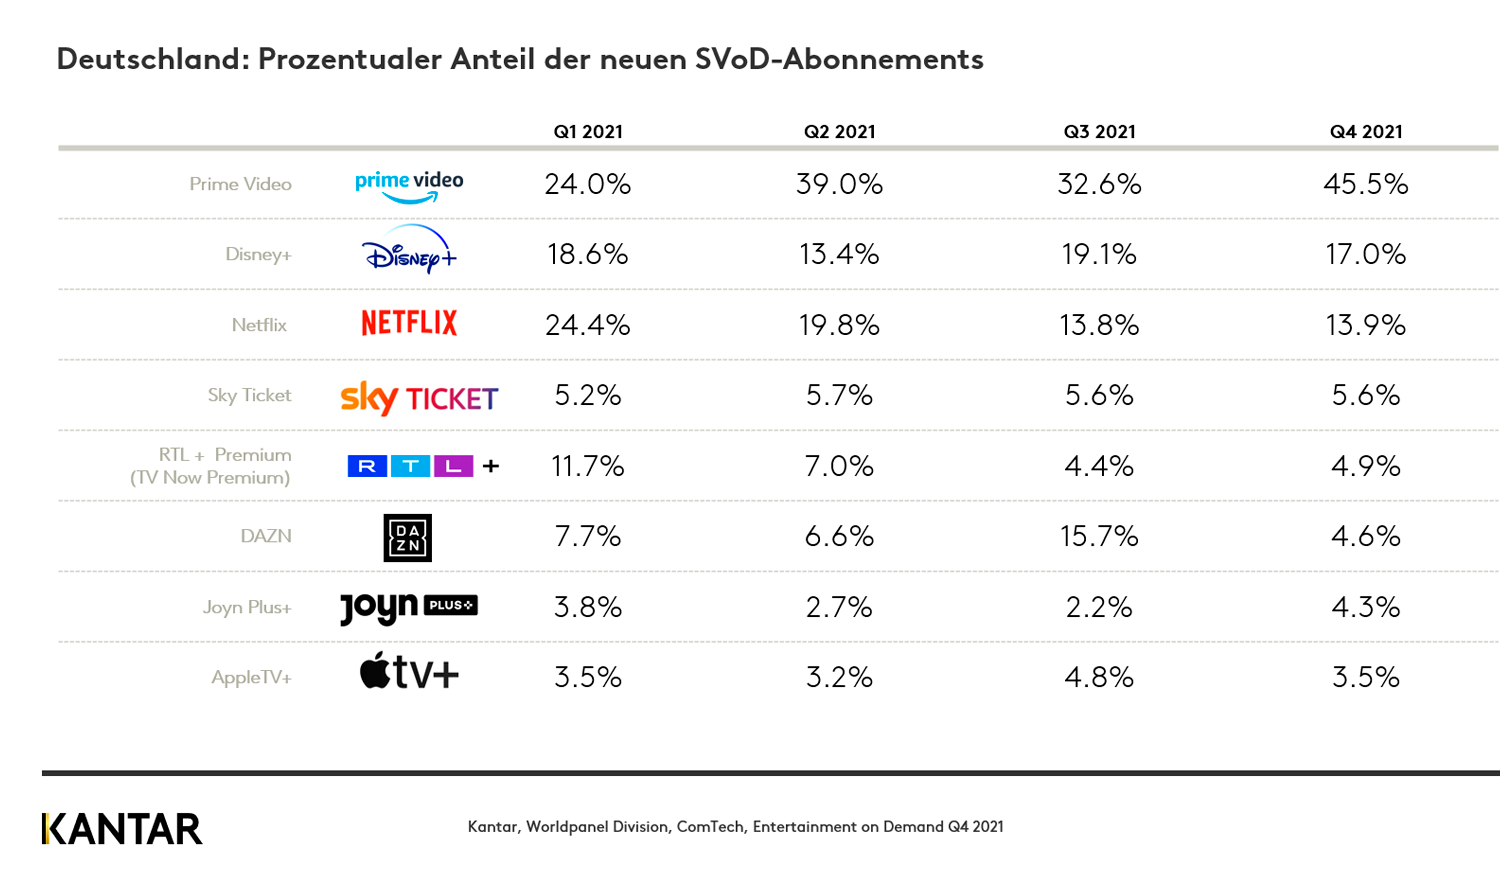 Prozentualer Anteil der neuen SVoD-Abonnements in Deutschland 2022